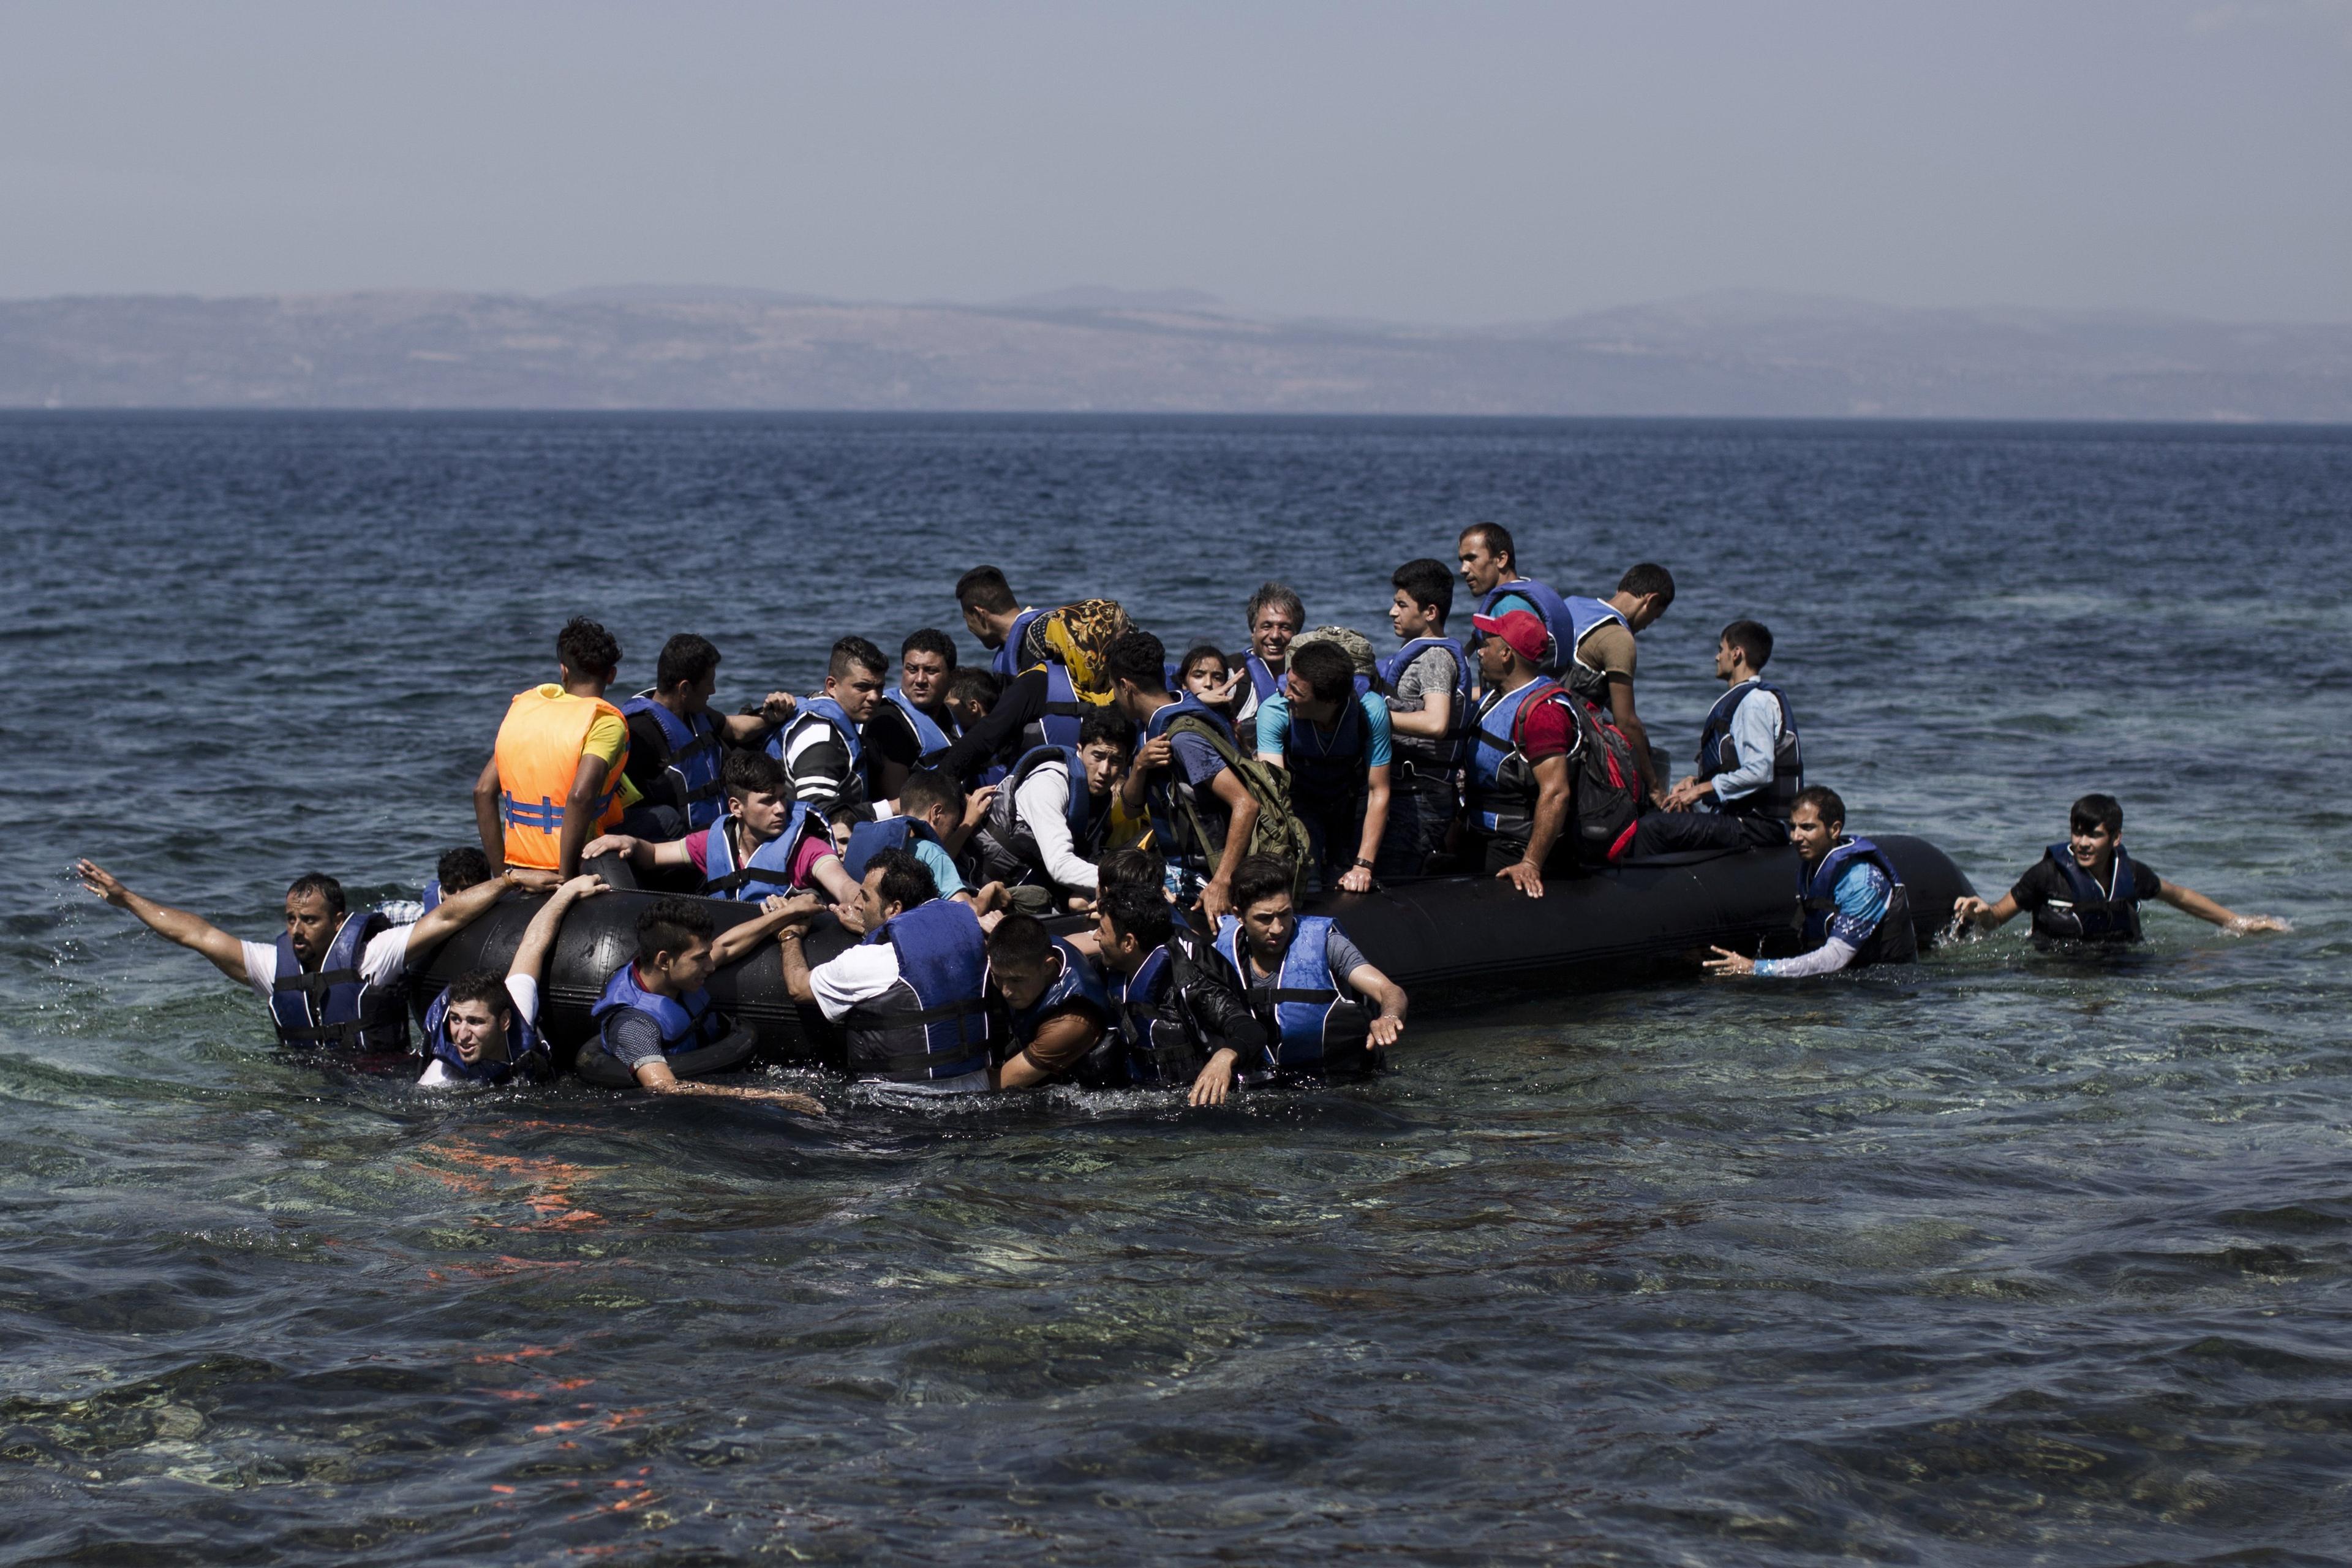 Människor fortsätter riskera livet för att ta sig till Europa. I oktober slogs nya rekord i antalet människor som korsat Medelhavet. Bilden från den grekiska ön Lesbos. (Foto: Angelos Tzortzinis /AFP/Getty Images)